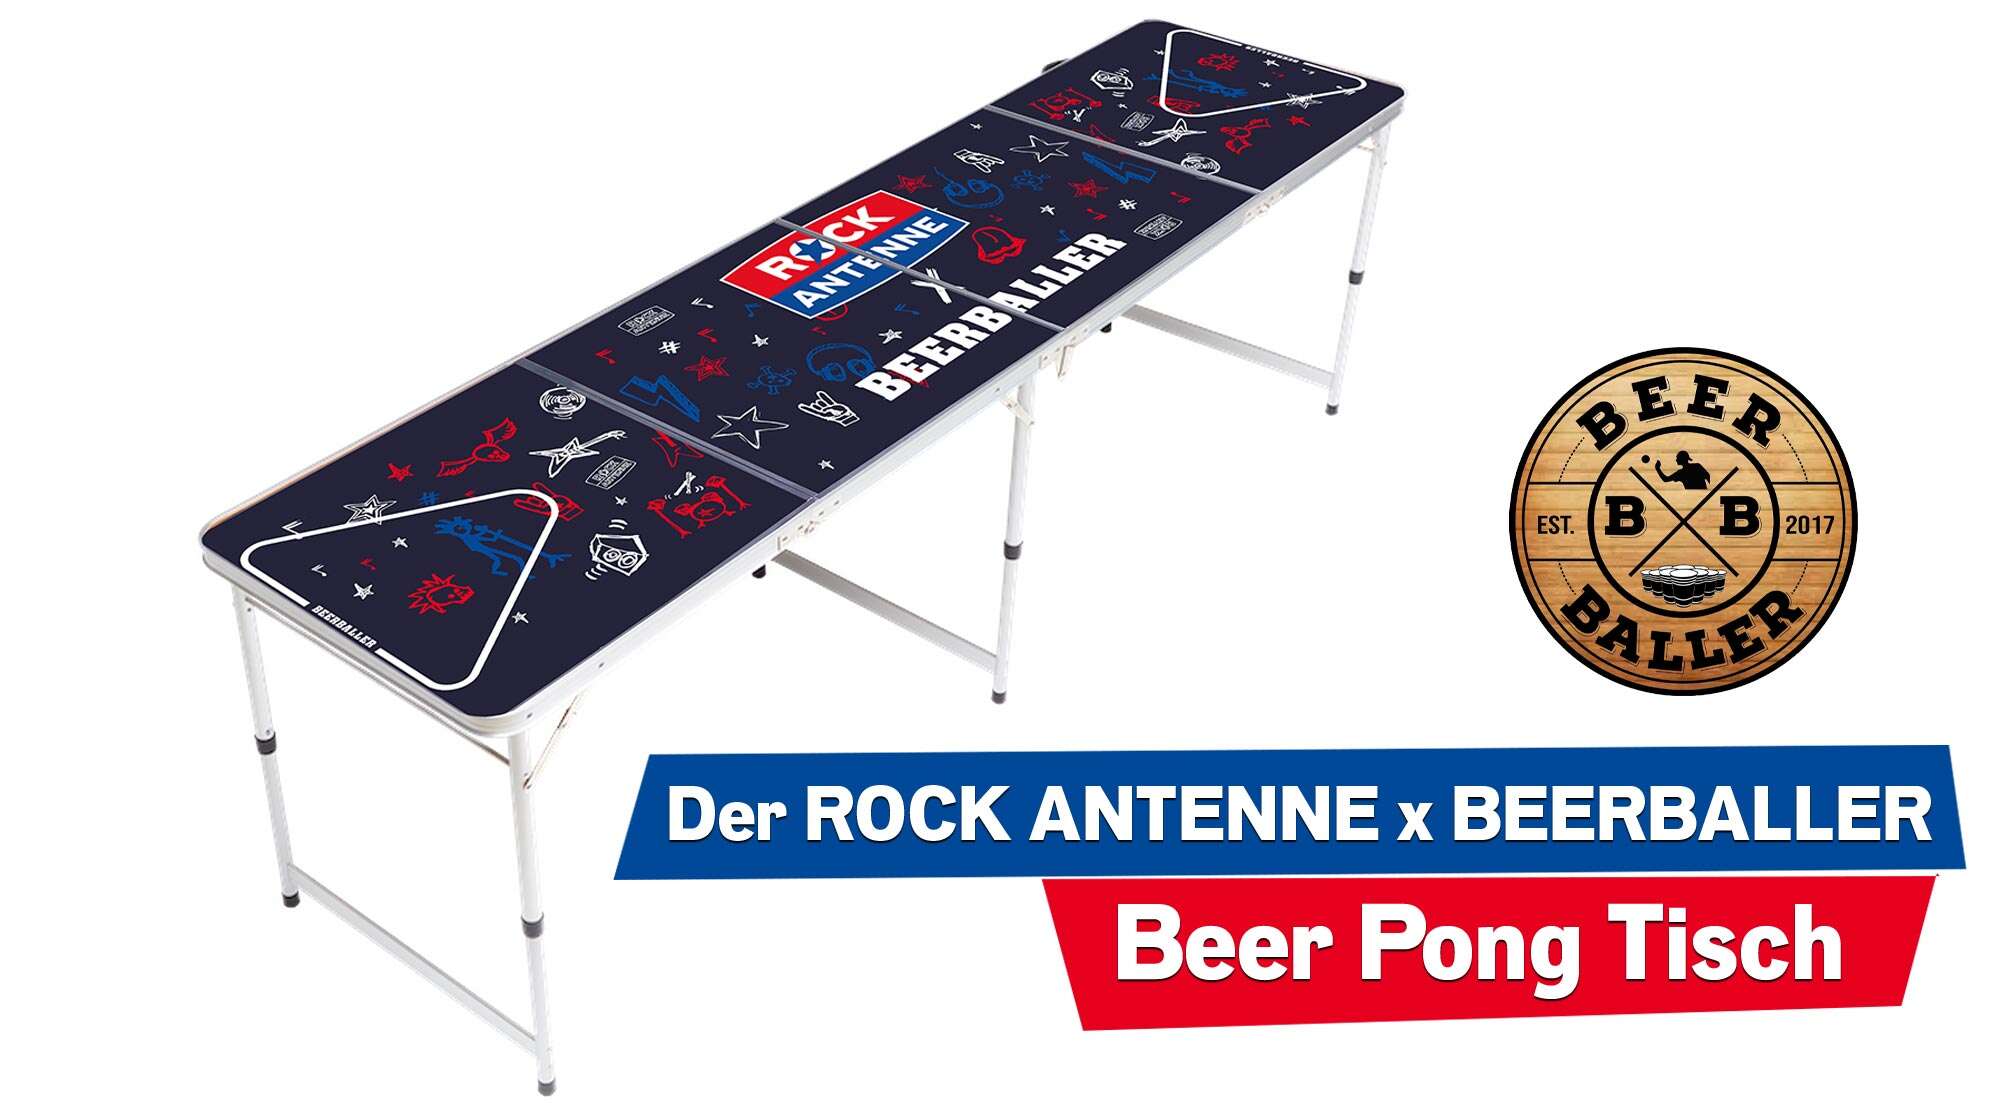 ROCK ANTENNE Beer Pong Tisch in Zusammenarbeit mit Beerballer